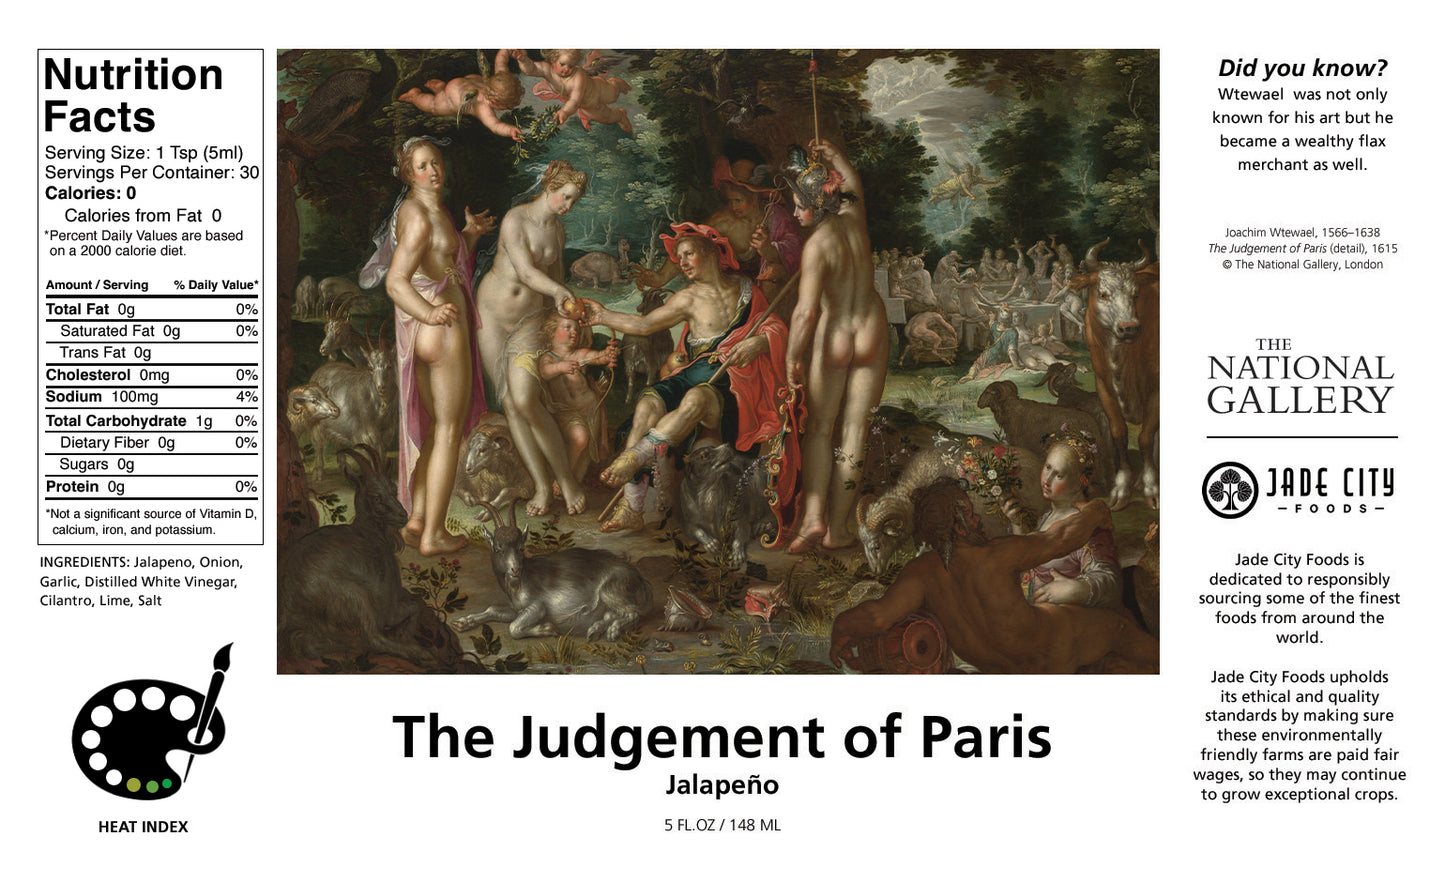 The Judgement of Paris : Jalapeño